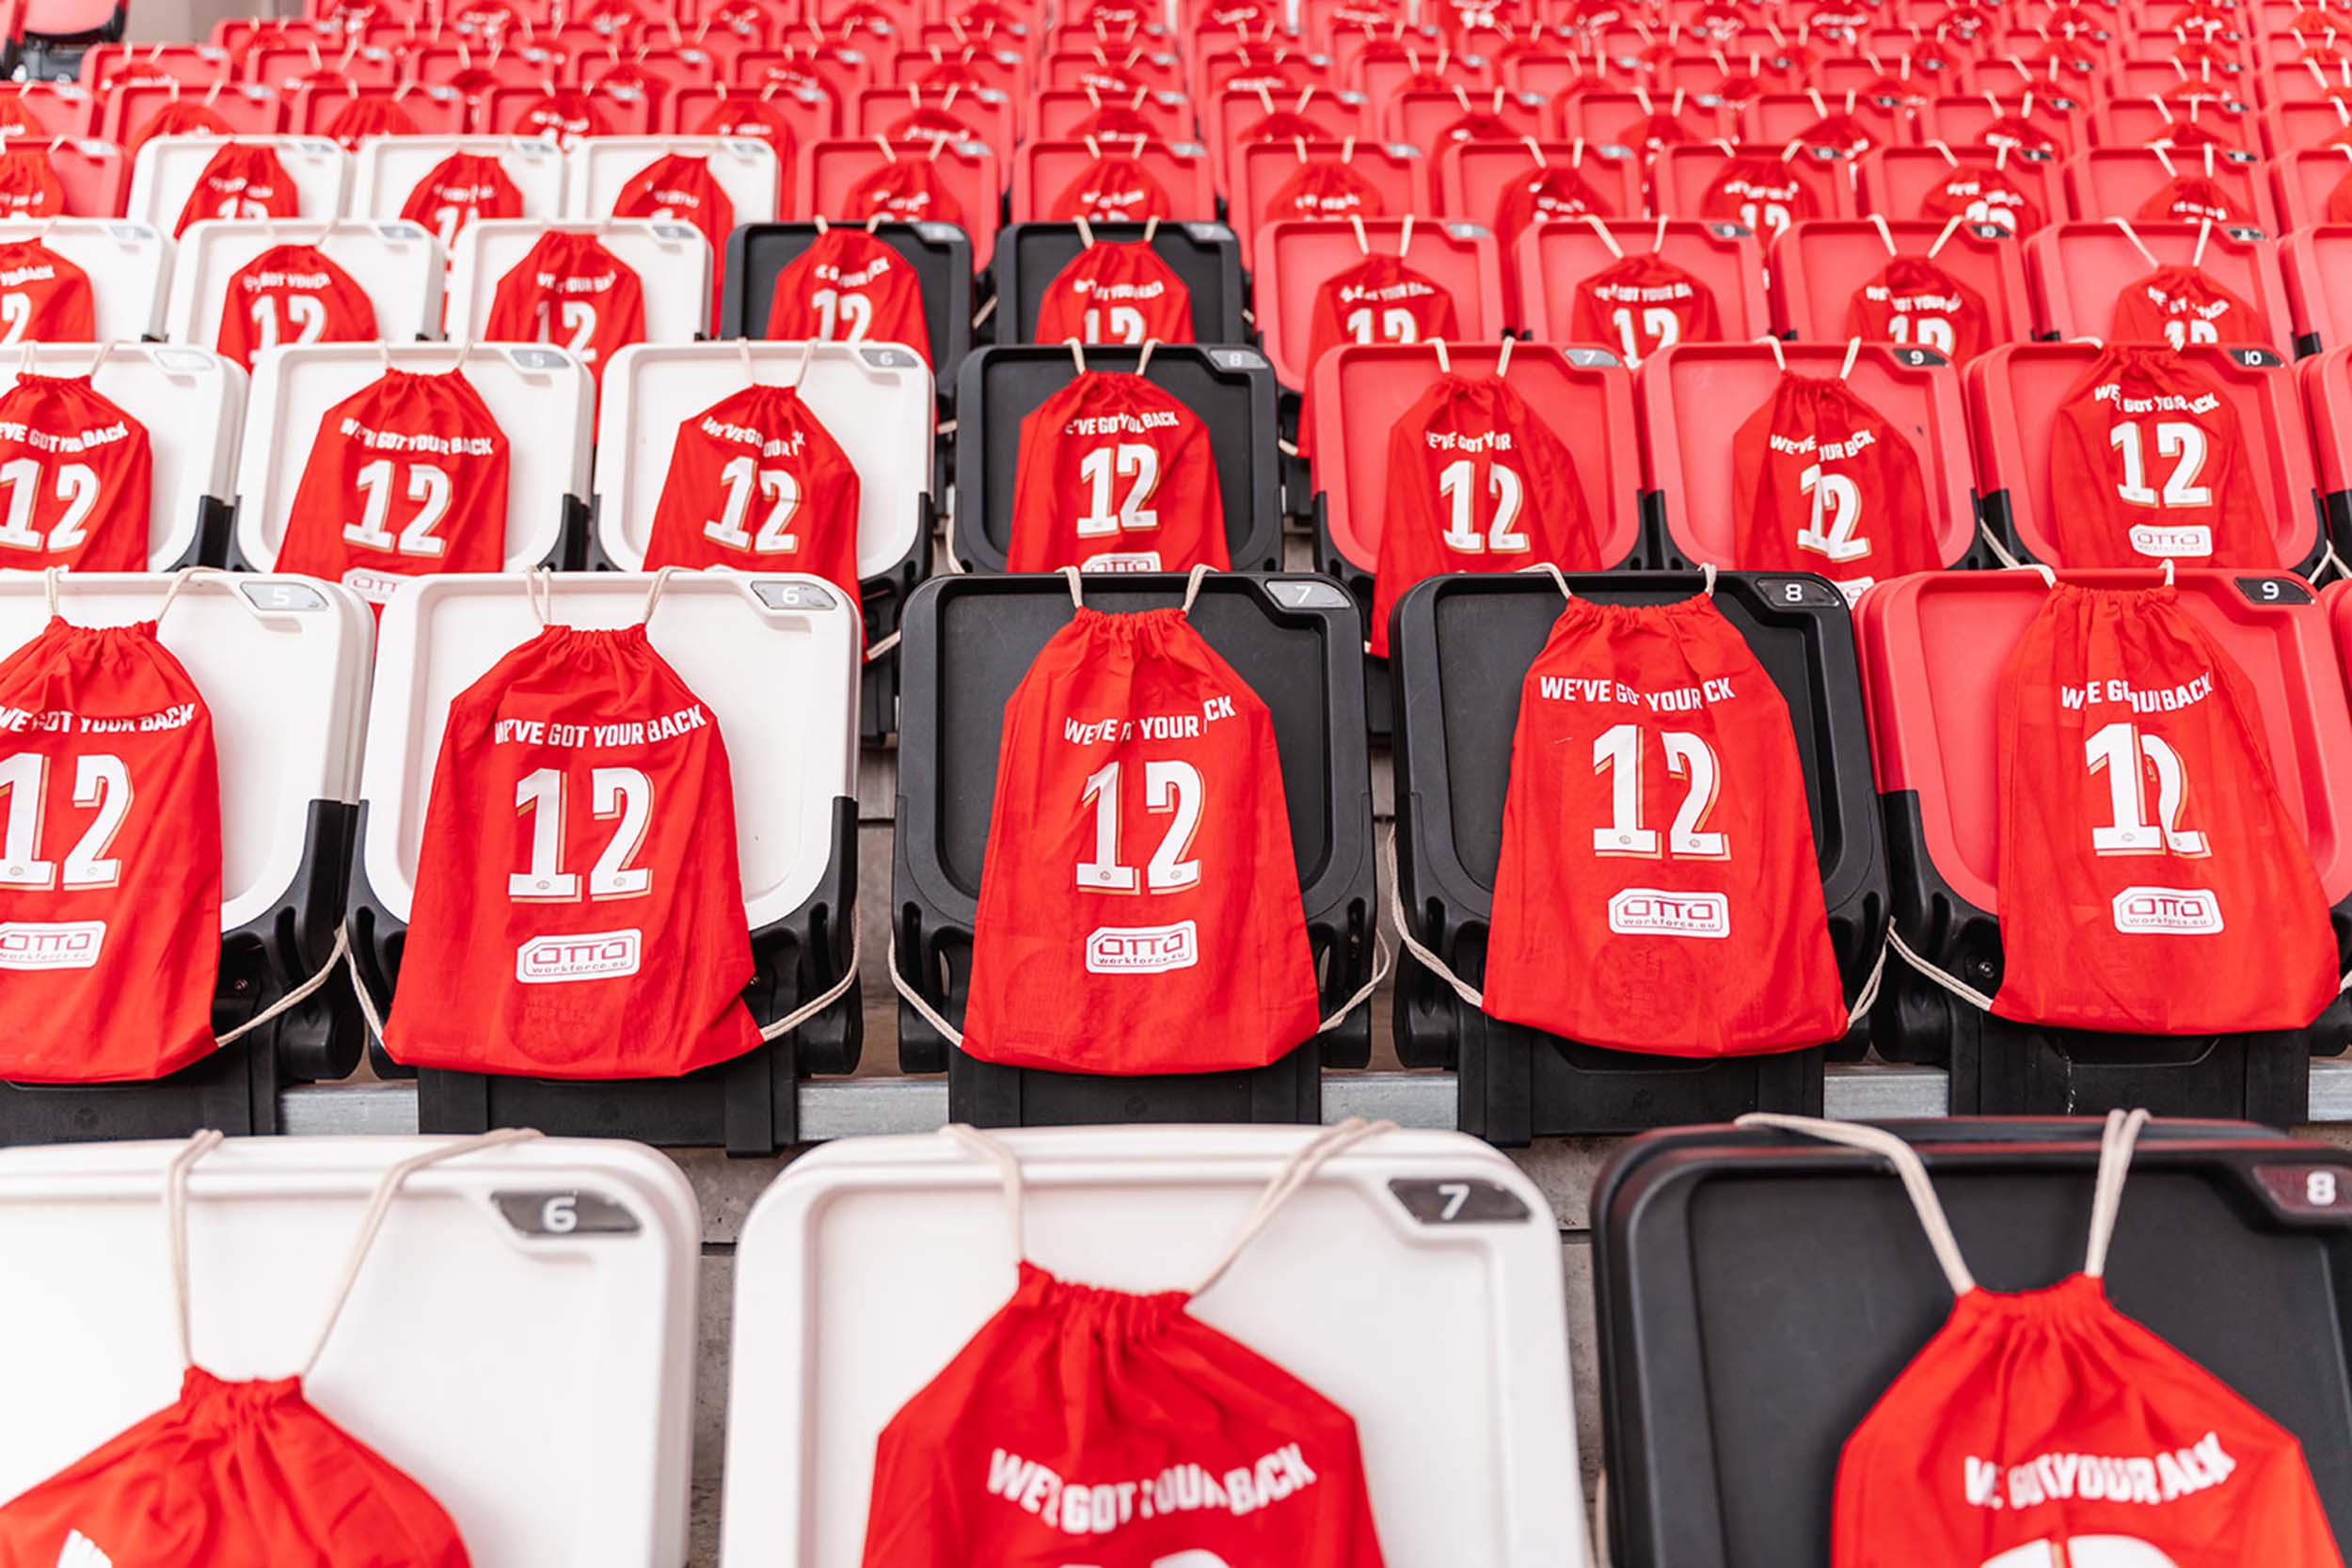 We've got your back tasjes op de tribune tijdens wedstrijd PSV - Feyenoord Vrouwen